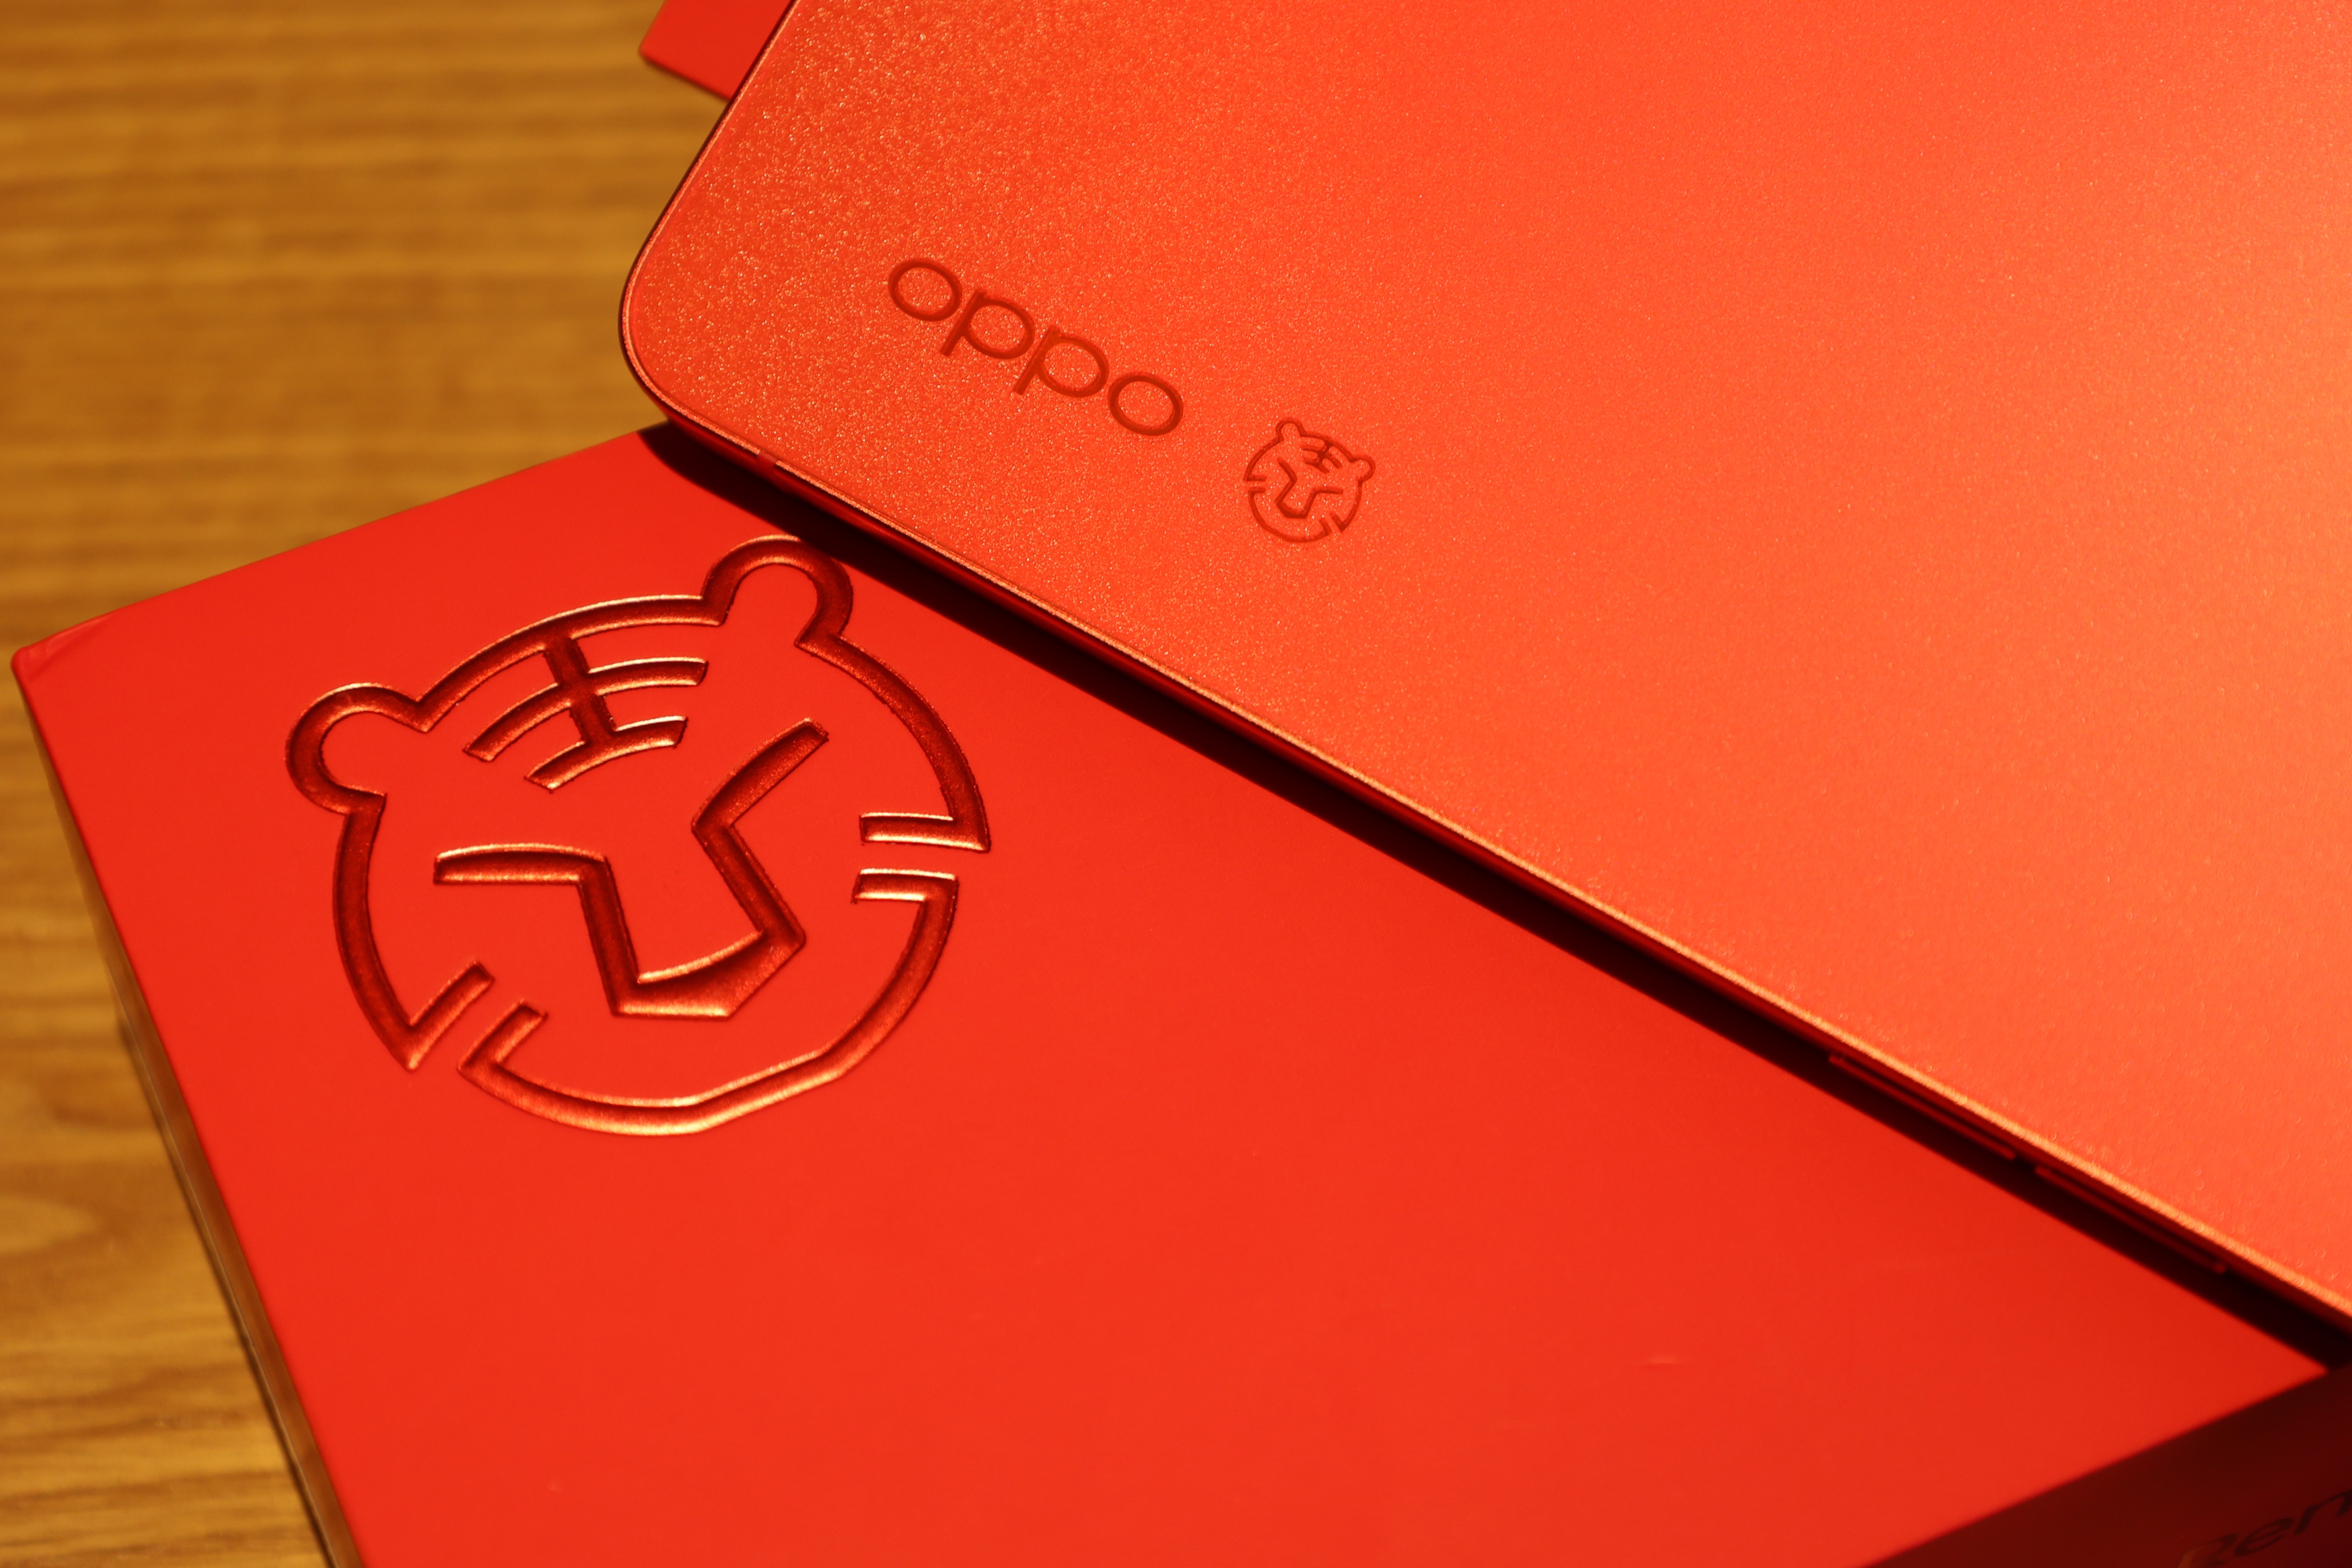 OPPOReno7红丝绒限定版，今年的年味就靠它了